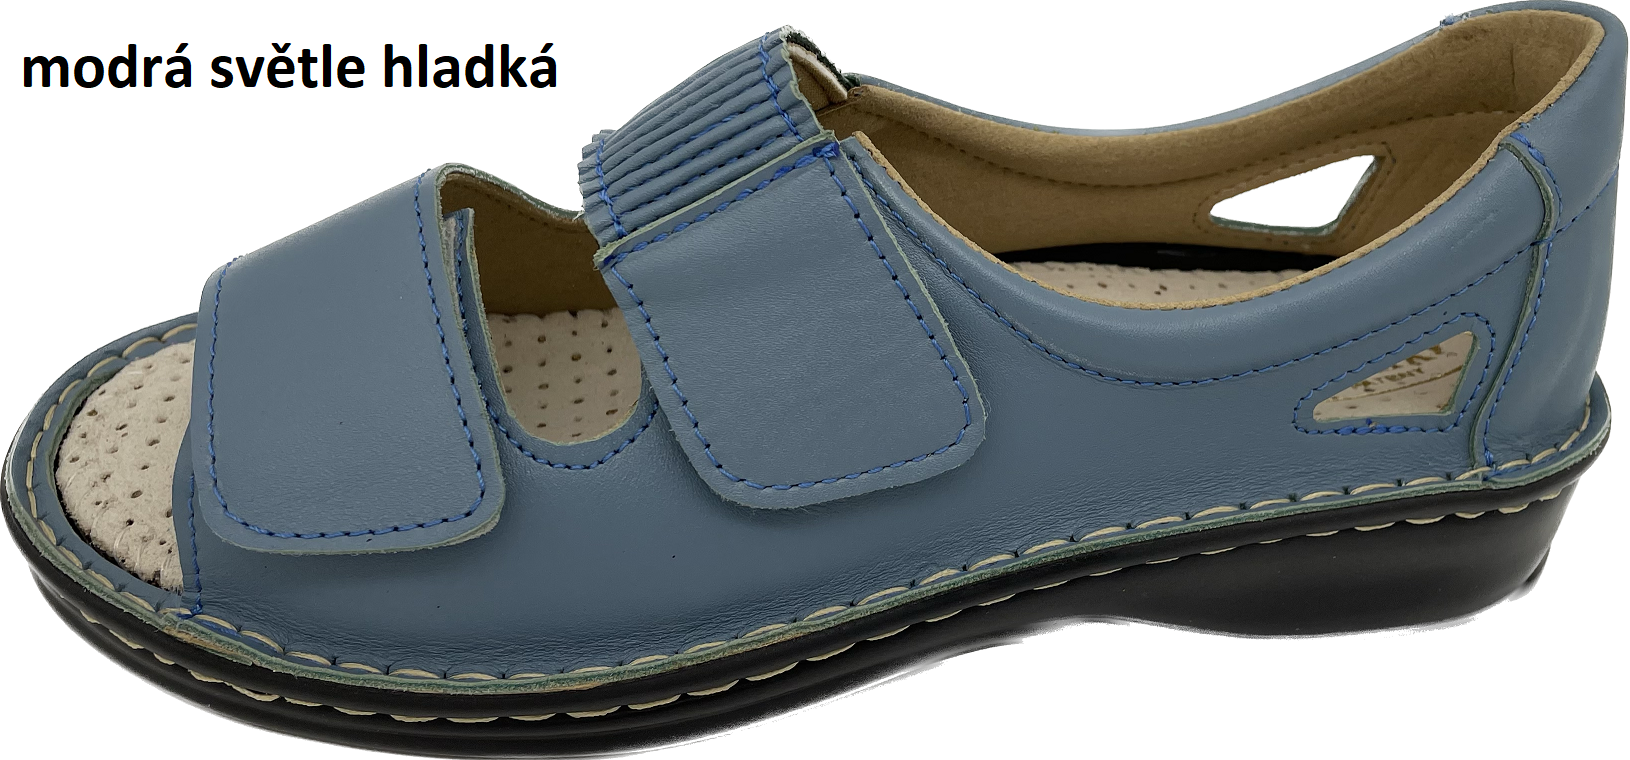 Boty Hanák vzor 306 - černá podešev Barva usně: modrá světle hladká, Velikosti obuvi: 36